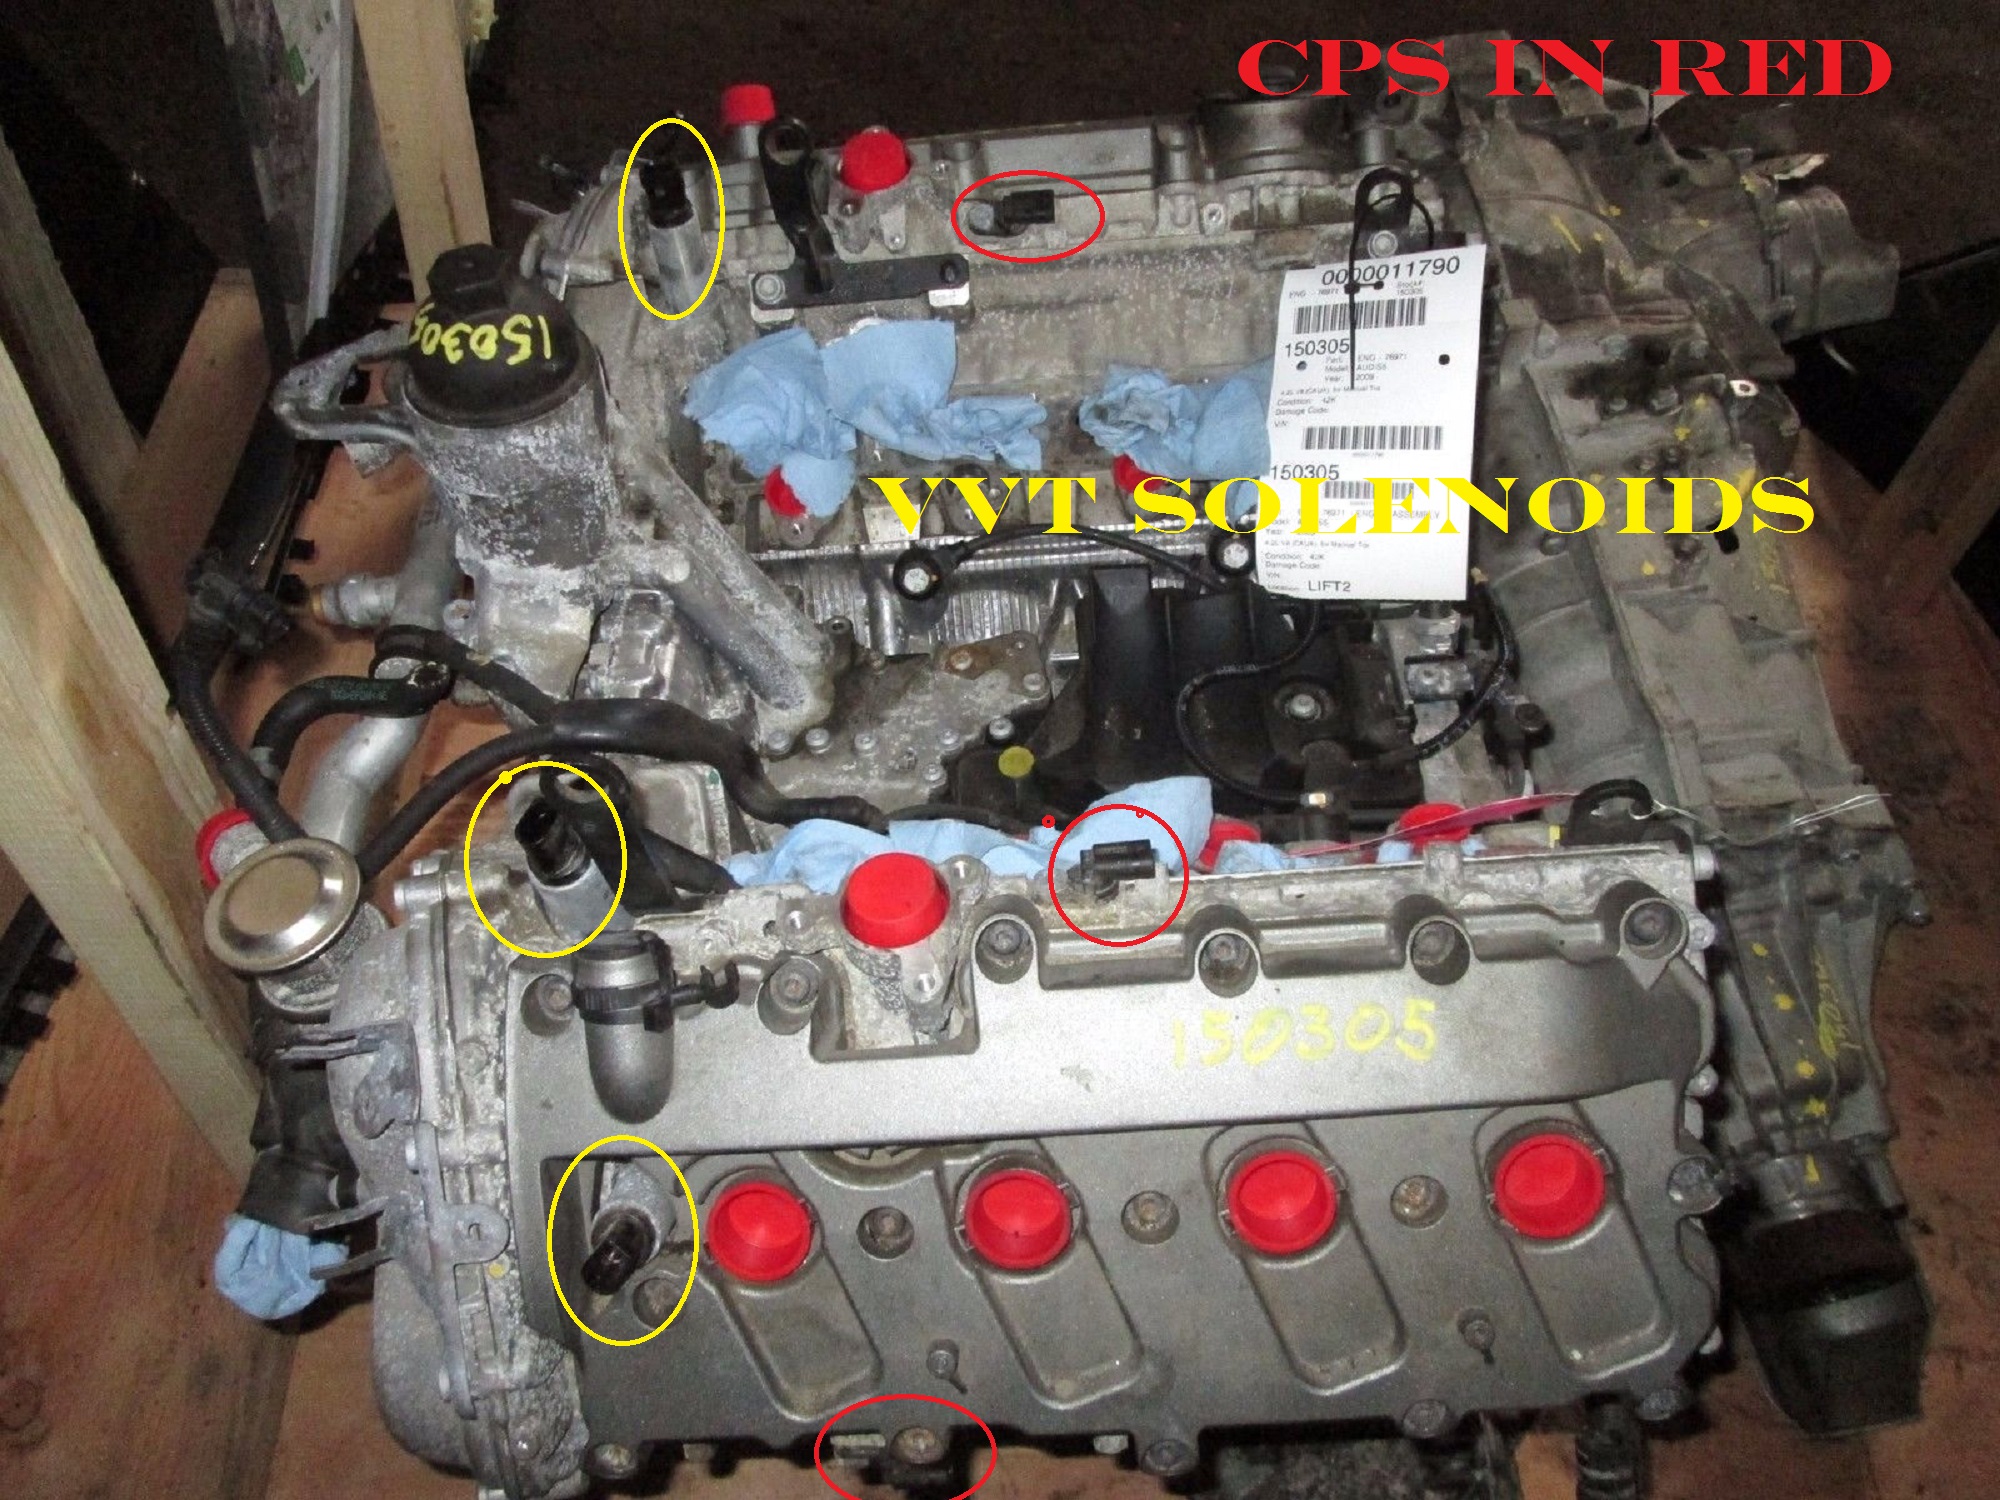 Camshaft position sensor: - Page 6 - AudiWorld Forums audi a6 crankshaft wiring 